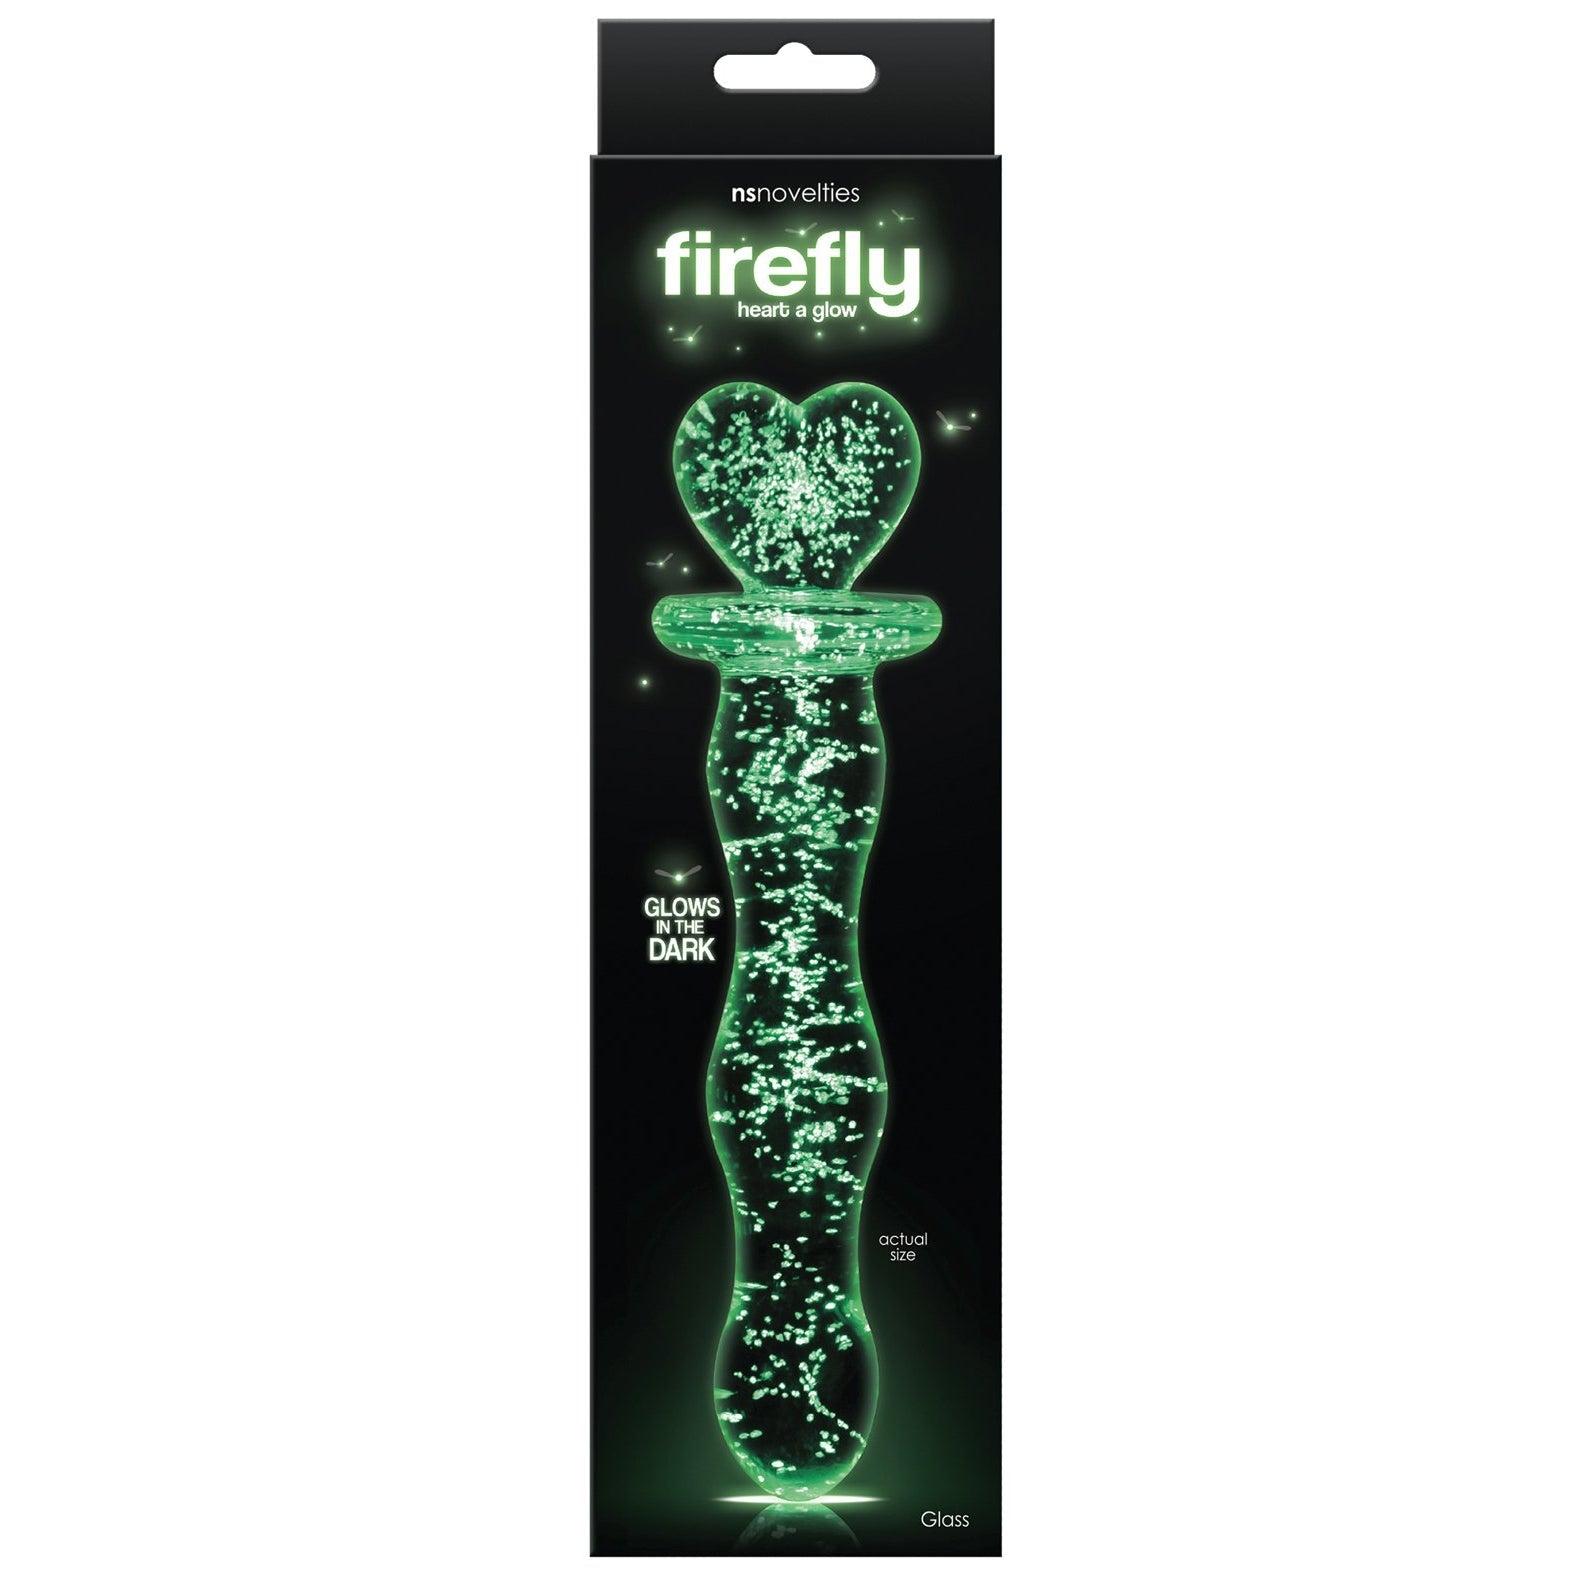 Firefly Heart a Glow Glass Dildo